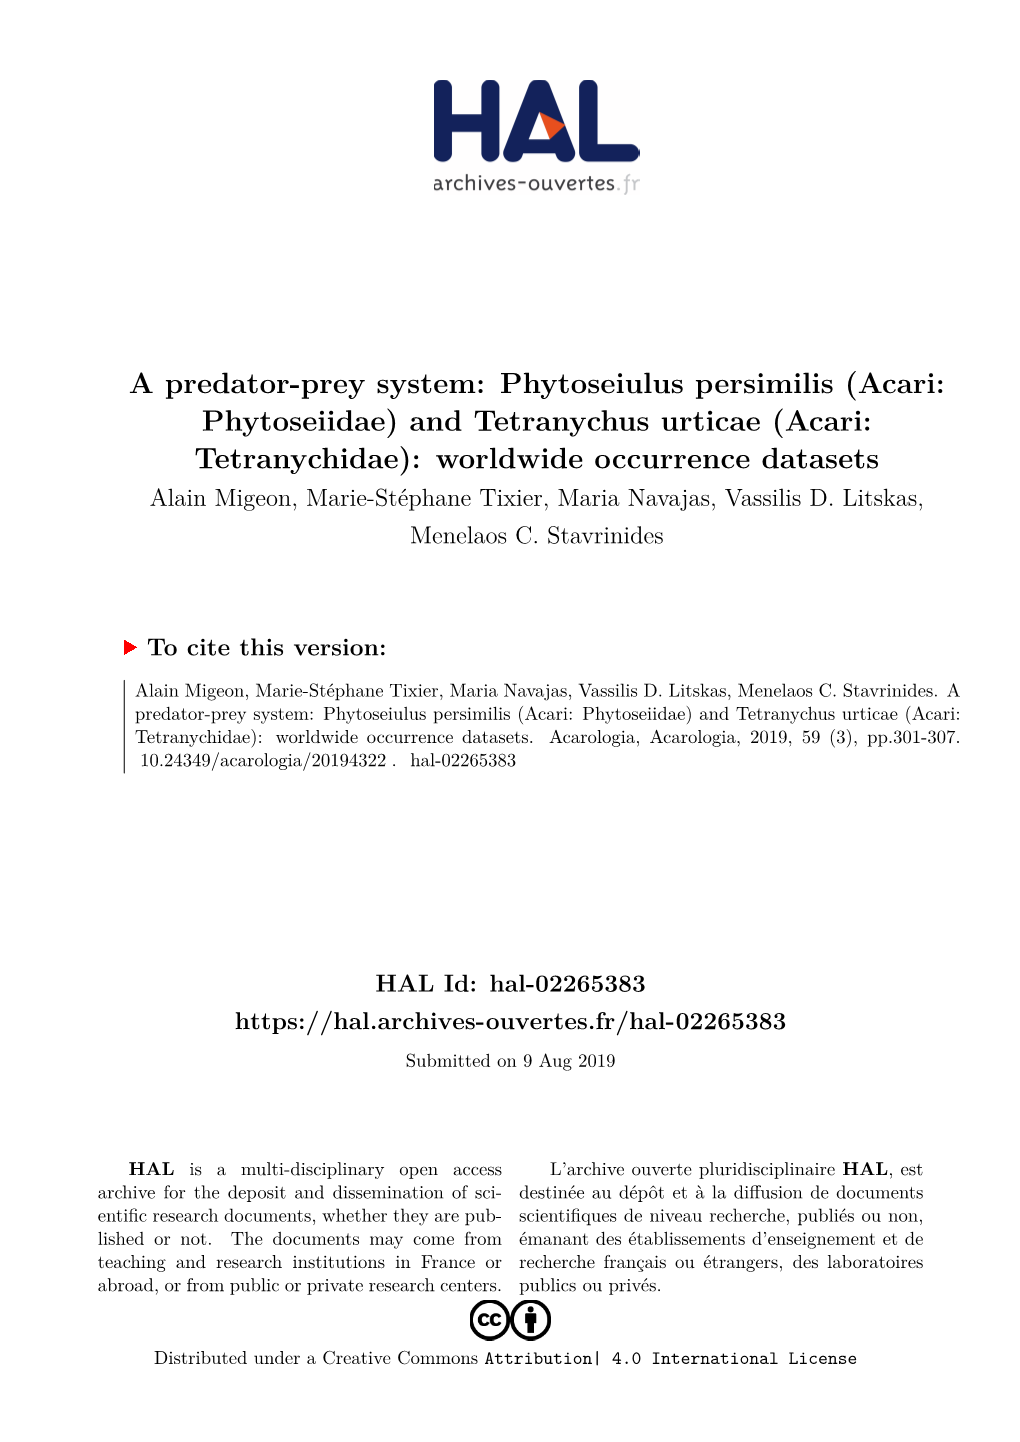 Phytoseiulus Persimilis